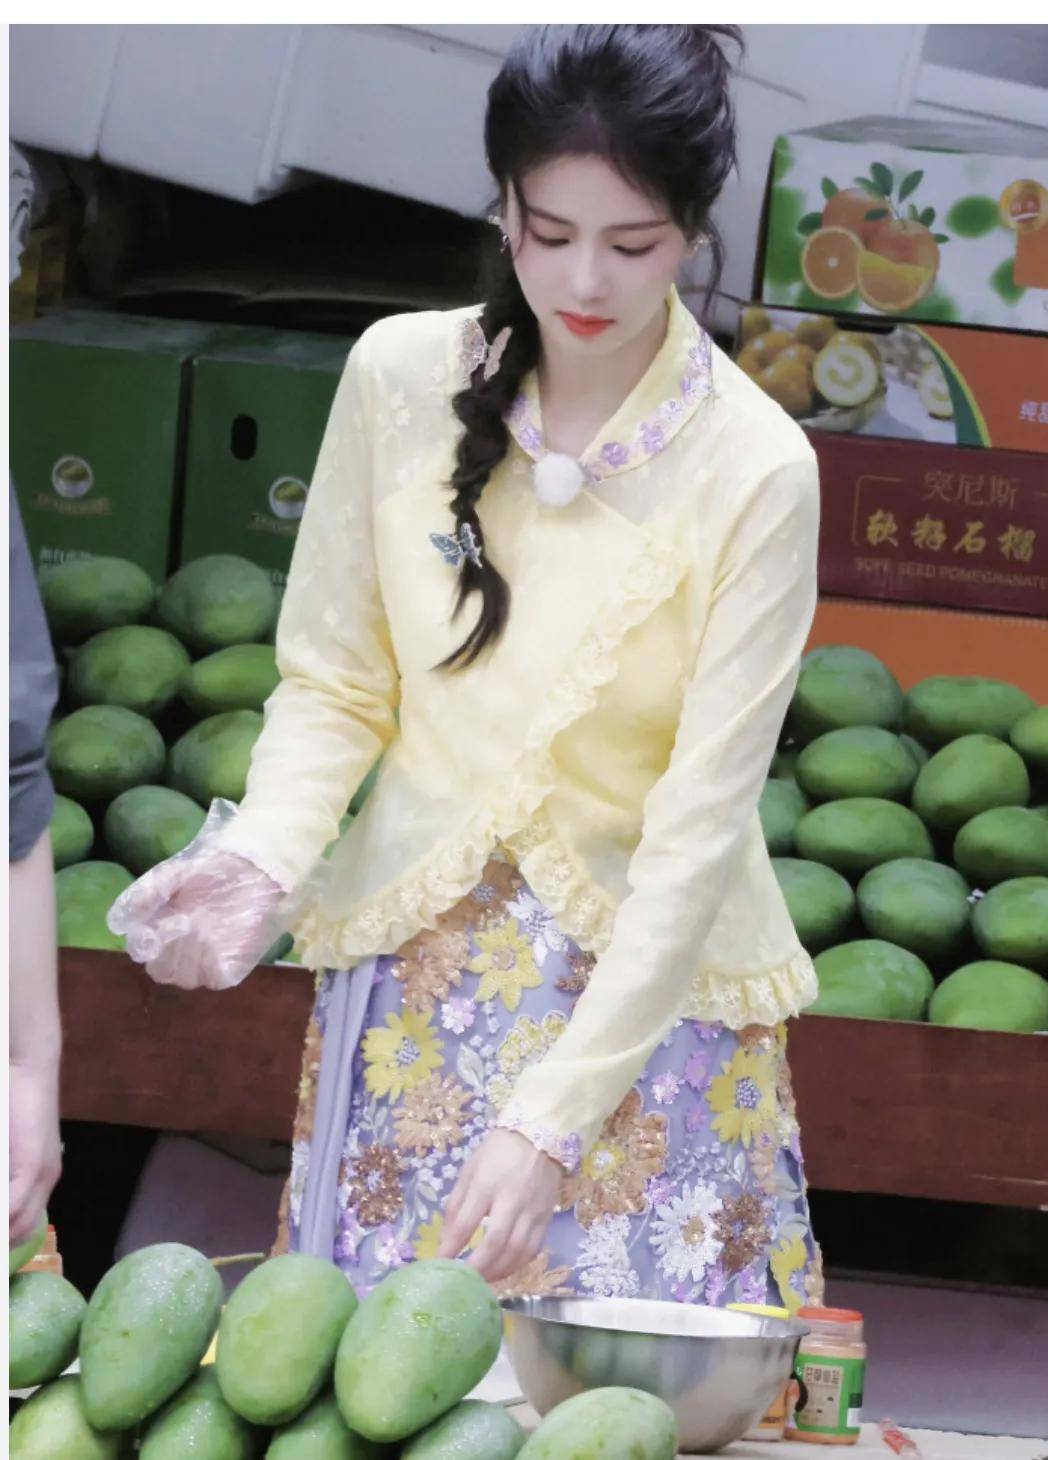 有网友还曝光了刘涛录制节目《奔跑吧》的视频,她和打扮和古风有关